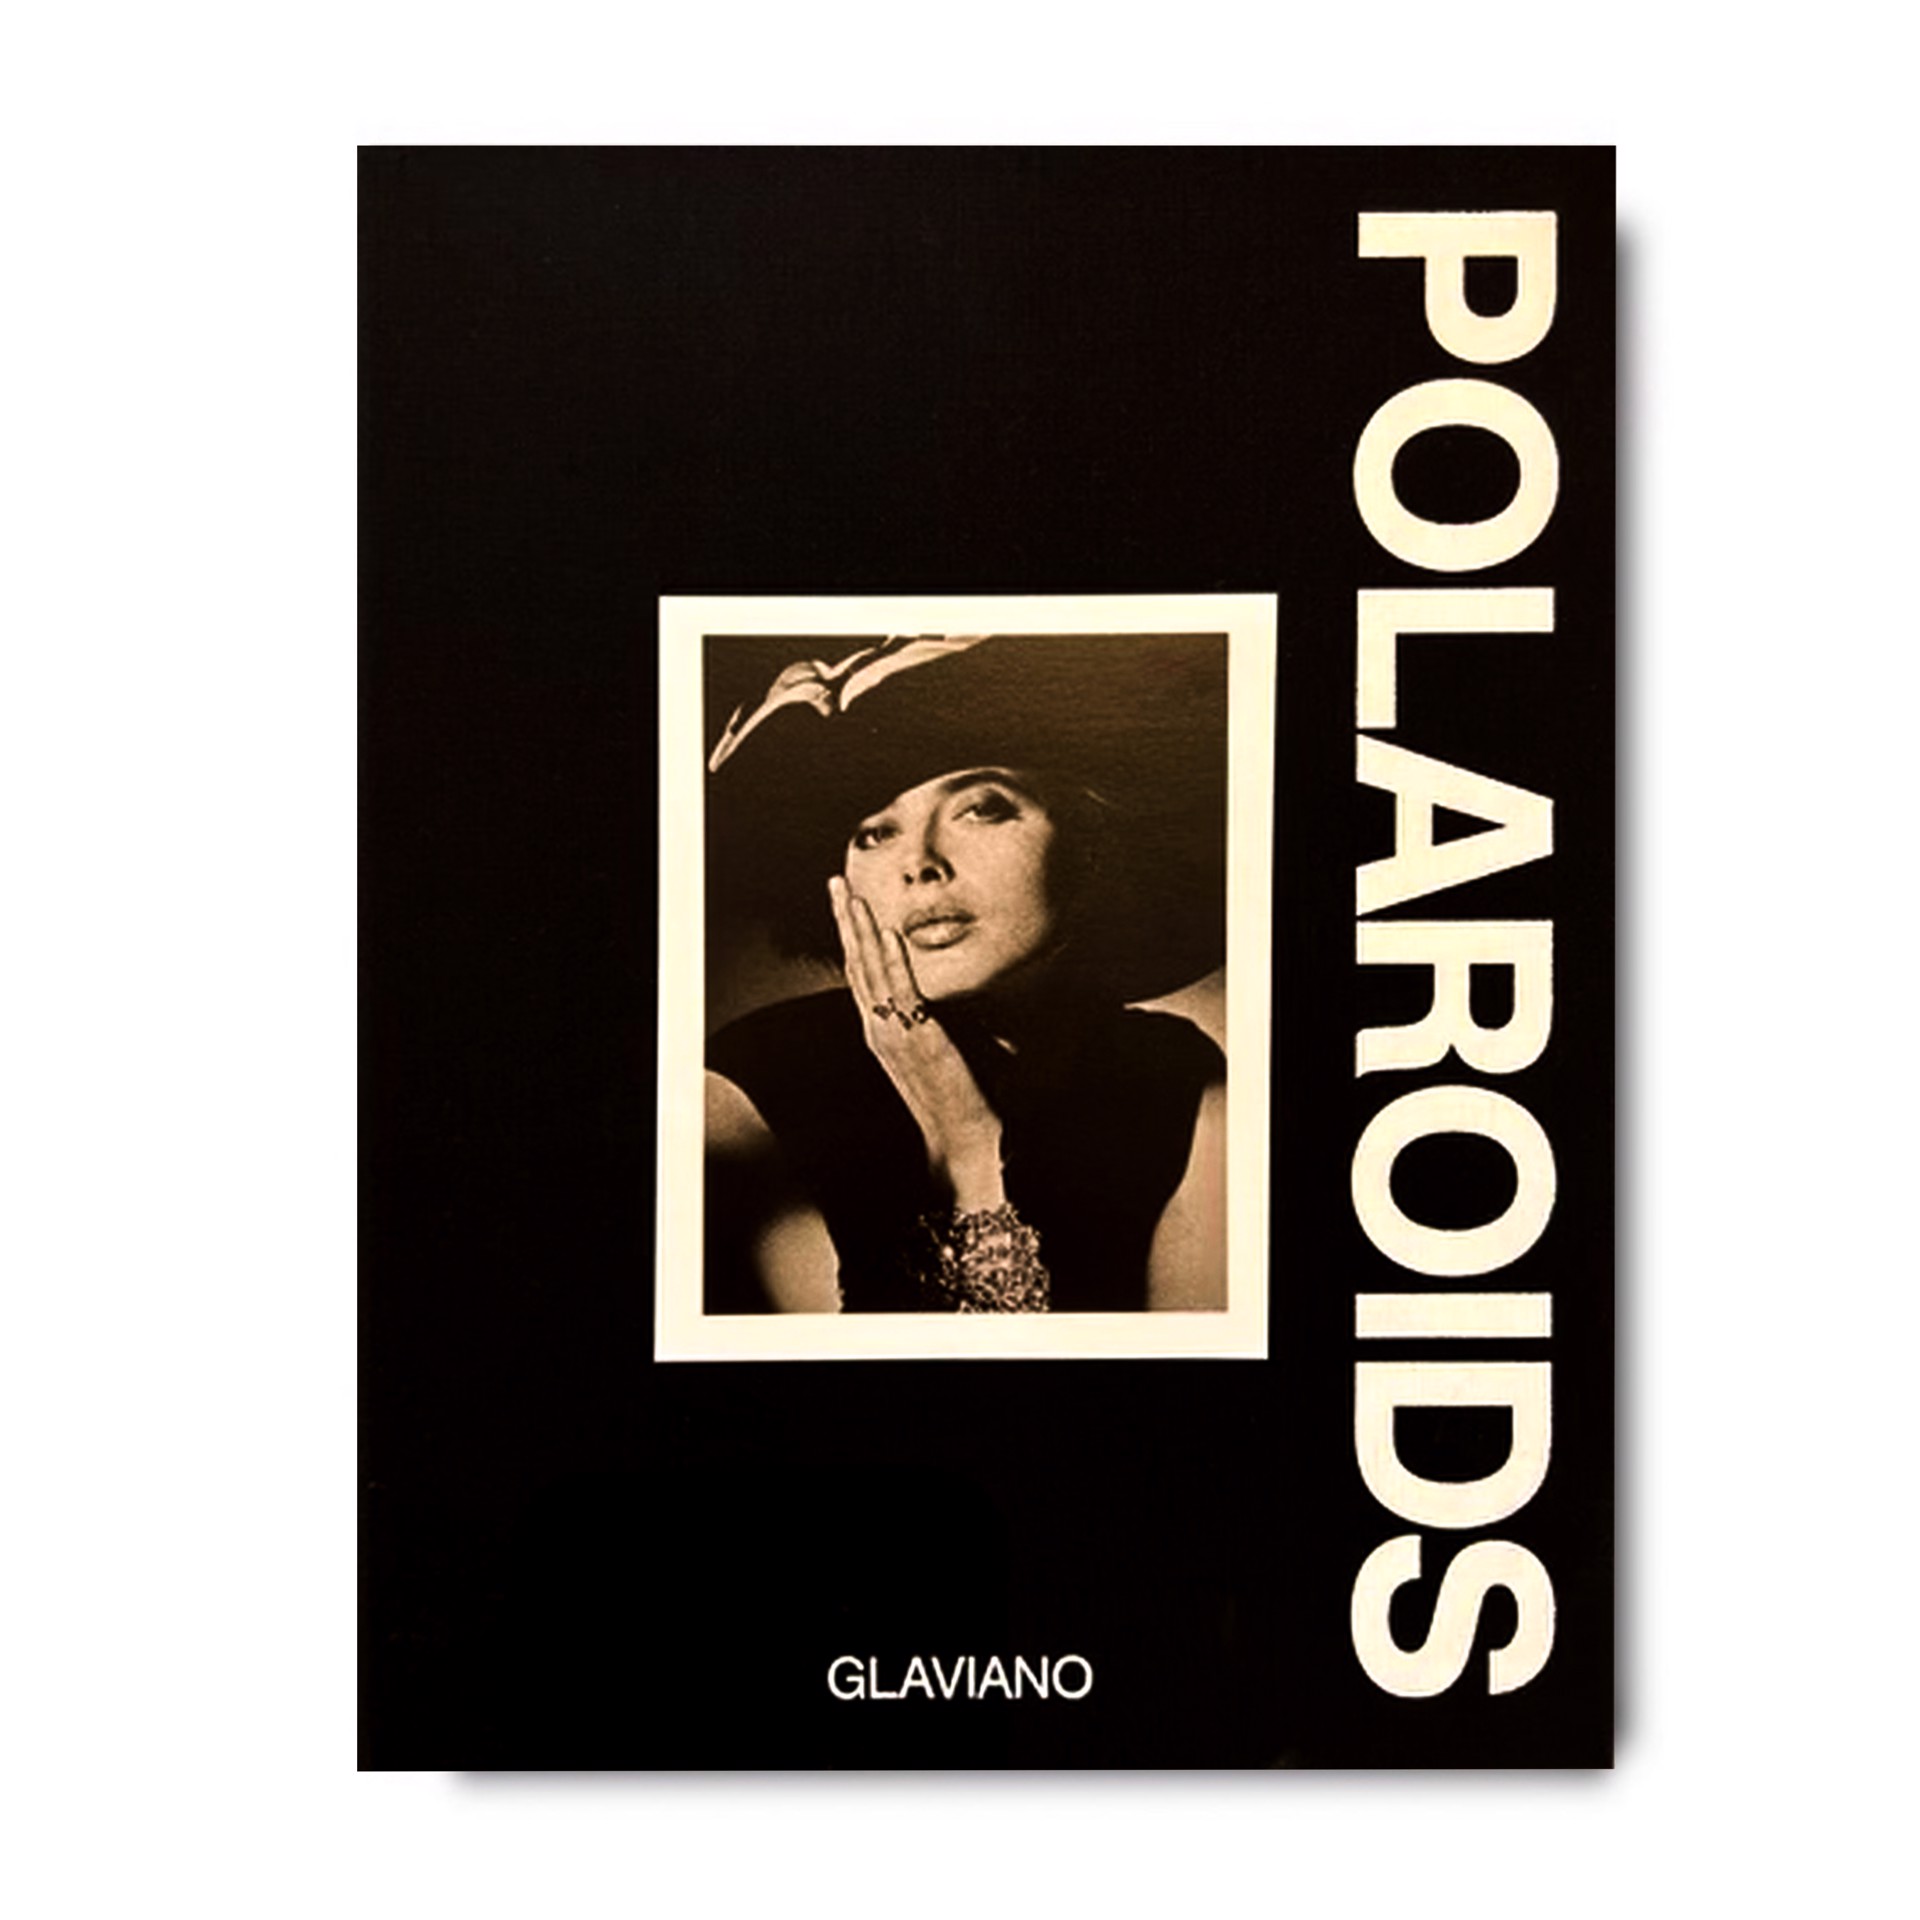 Polaroids by Marco Glaviano